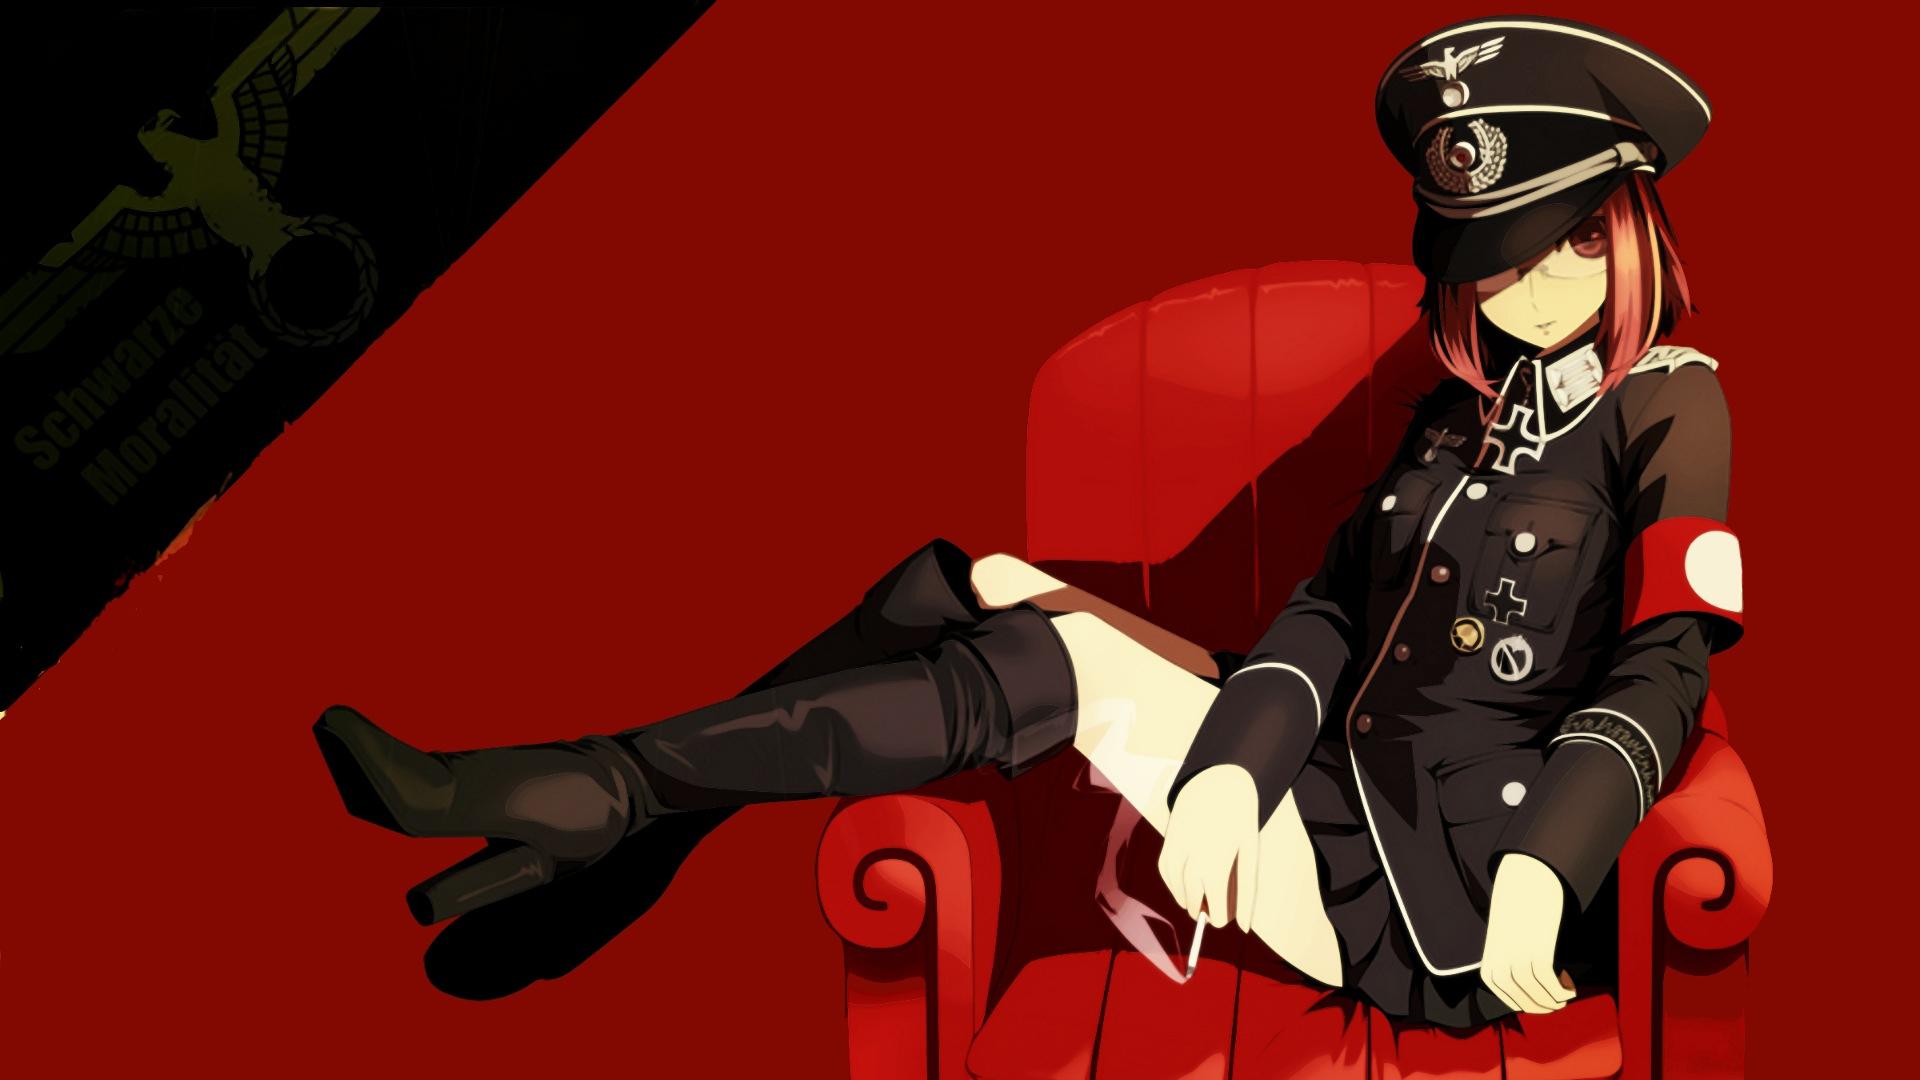 Military Uniform Girl Anime Wallpapers